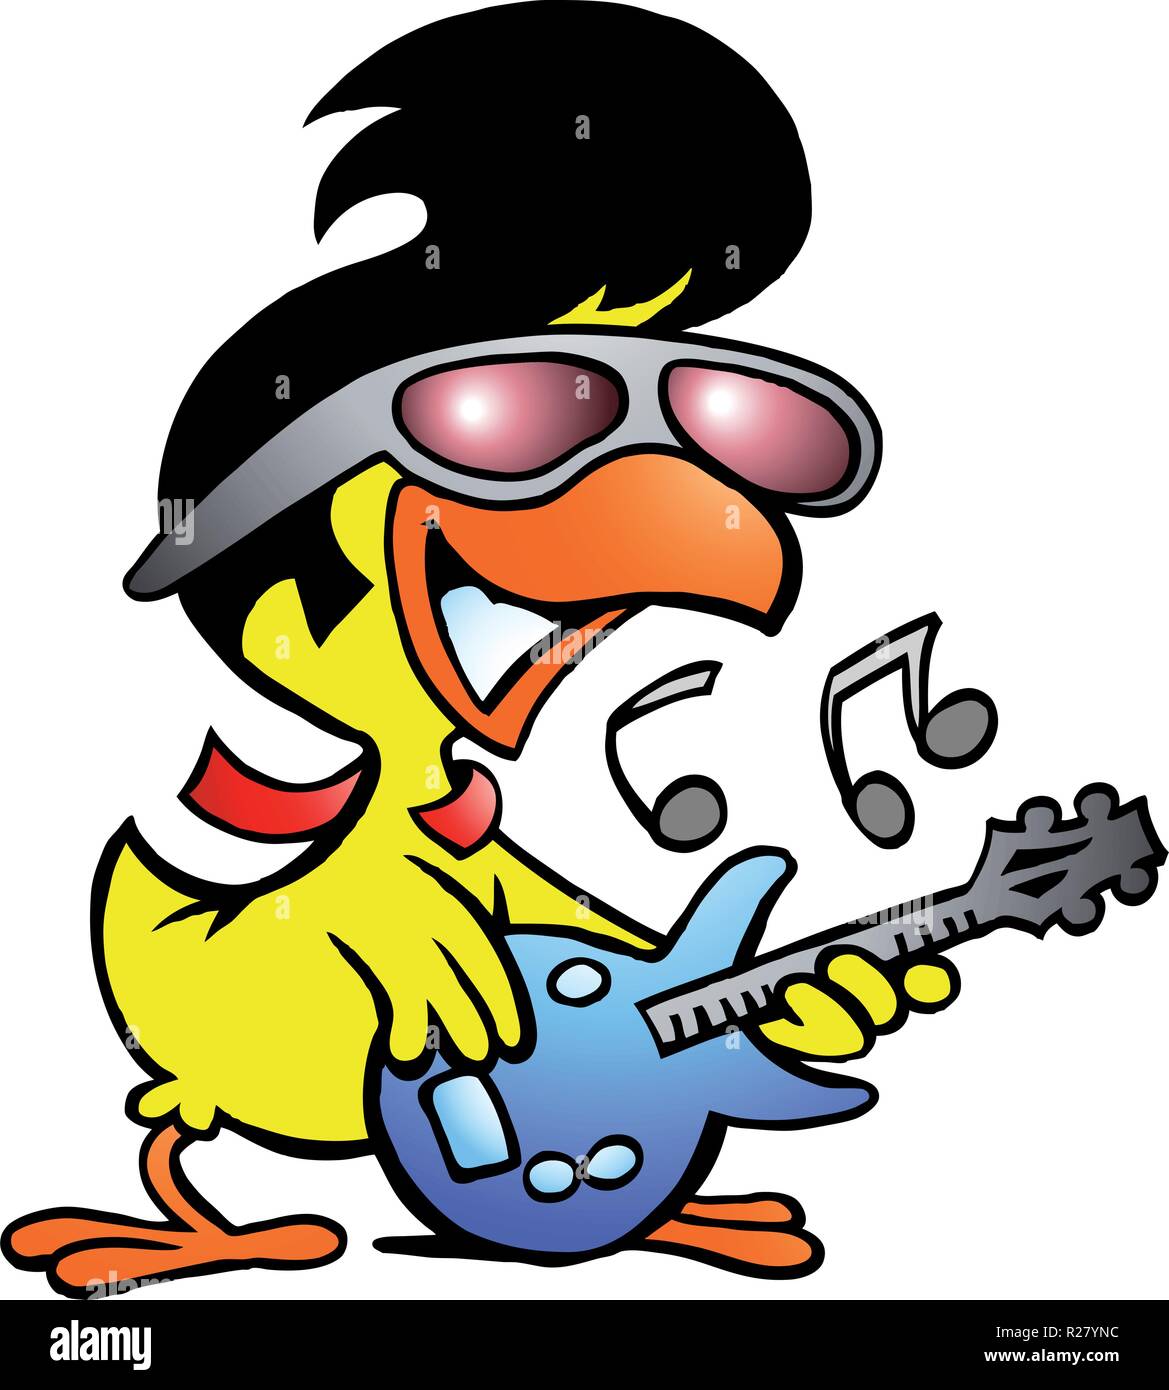 Disegnate a mano illustrazione vettoriale di un pollo smart giocando alla chitarra Illustrazione Vettoriale